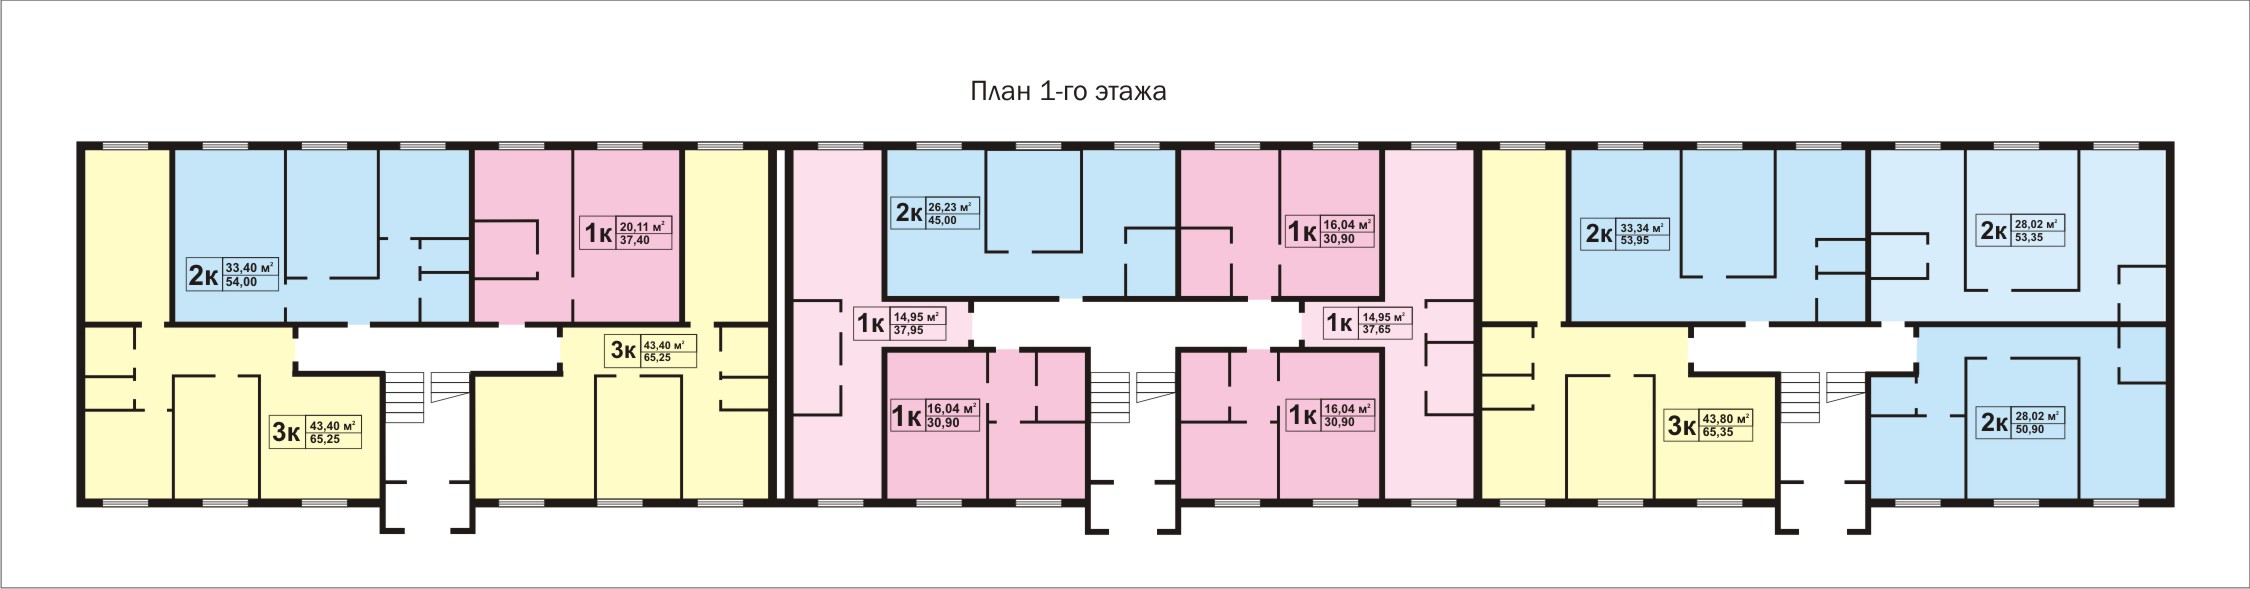 План 1-го этажа типового дома